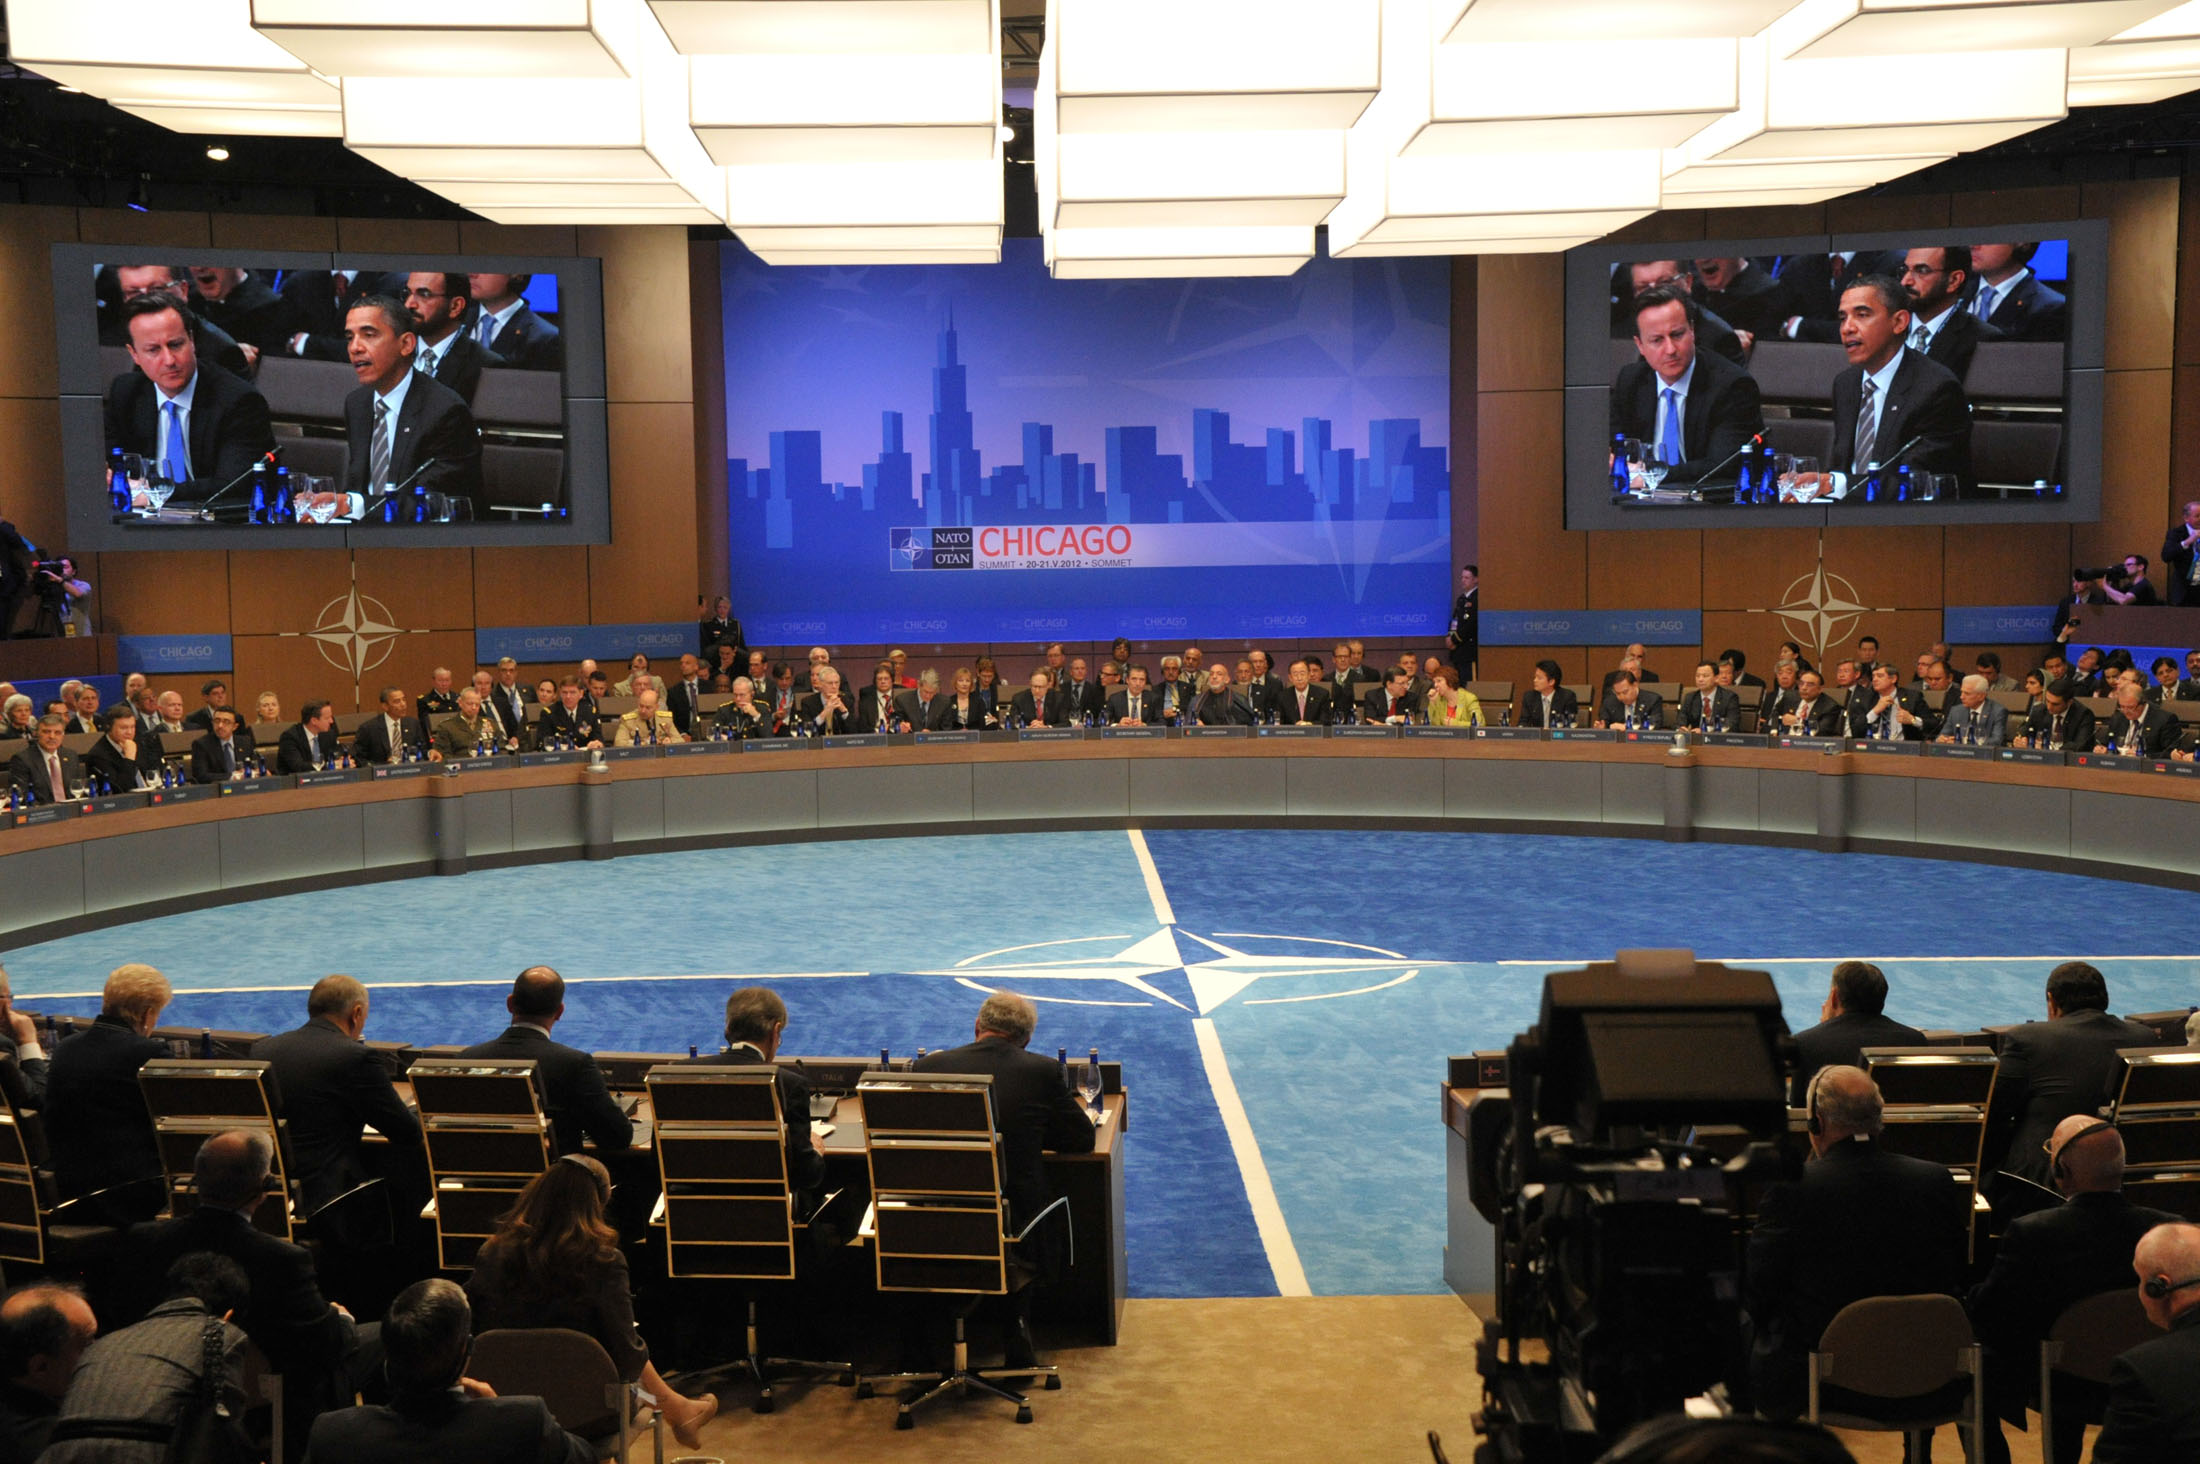 NATO Summit in Chicago